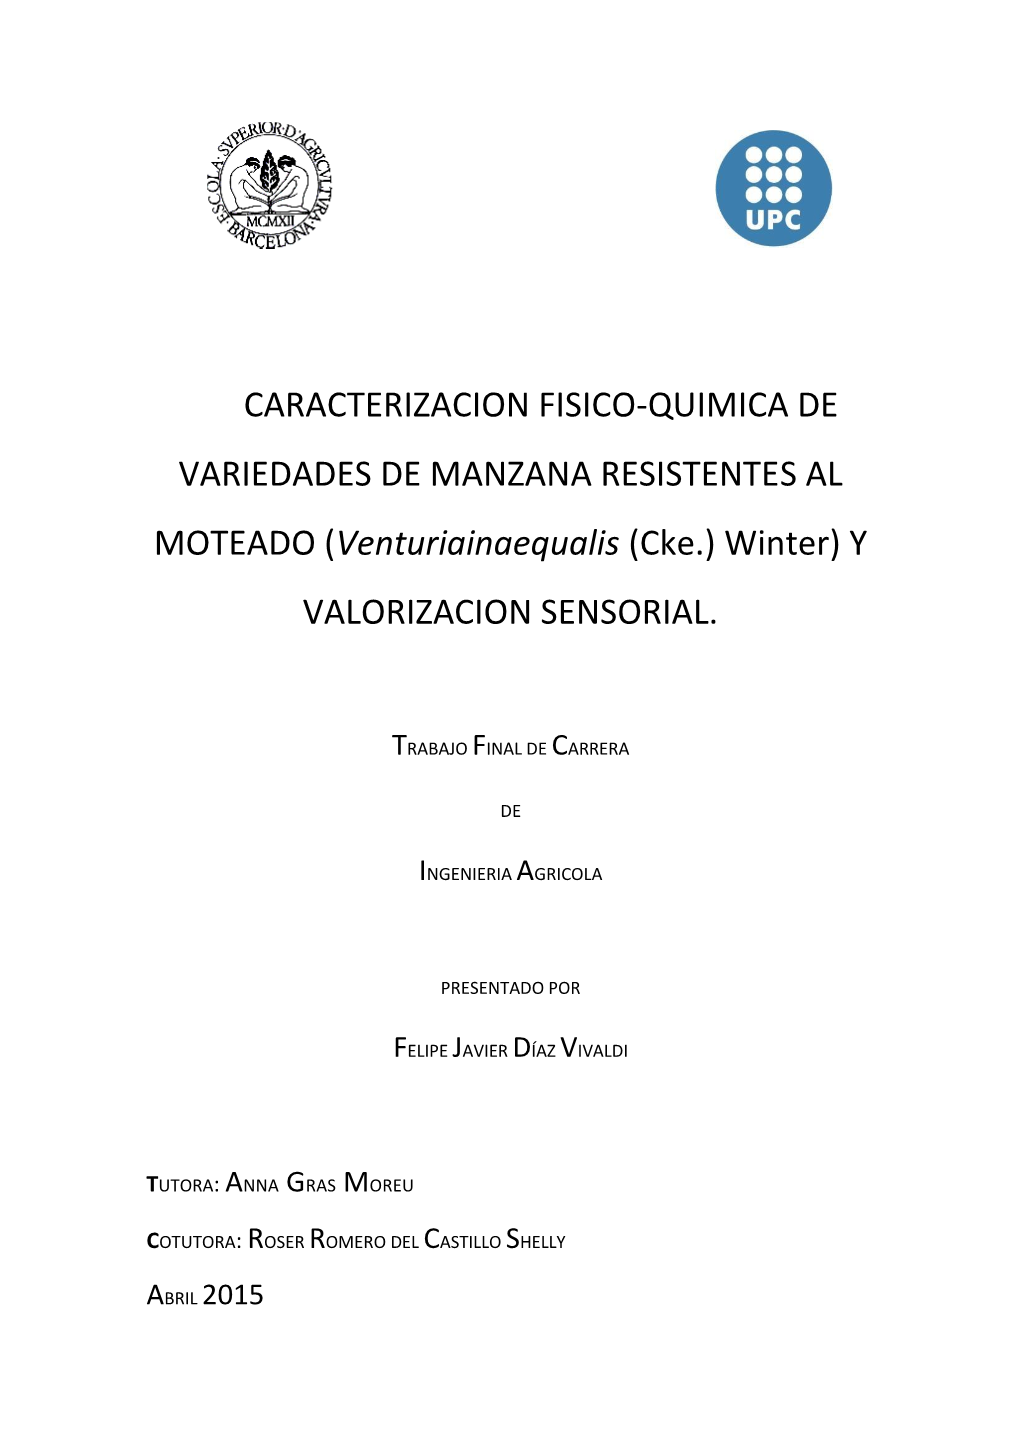 CARACTERIZACION FISICO-QUIMICA DE VARIEDADES DE MANZANA RESISTENTES AL MOTEADO (Venturiainaequalis (Cke.) Winter) Y VALORIZACION SENSORIAL